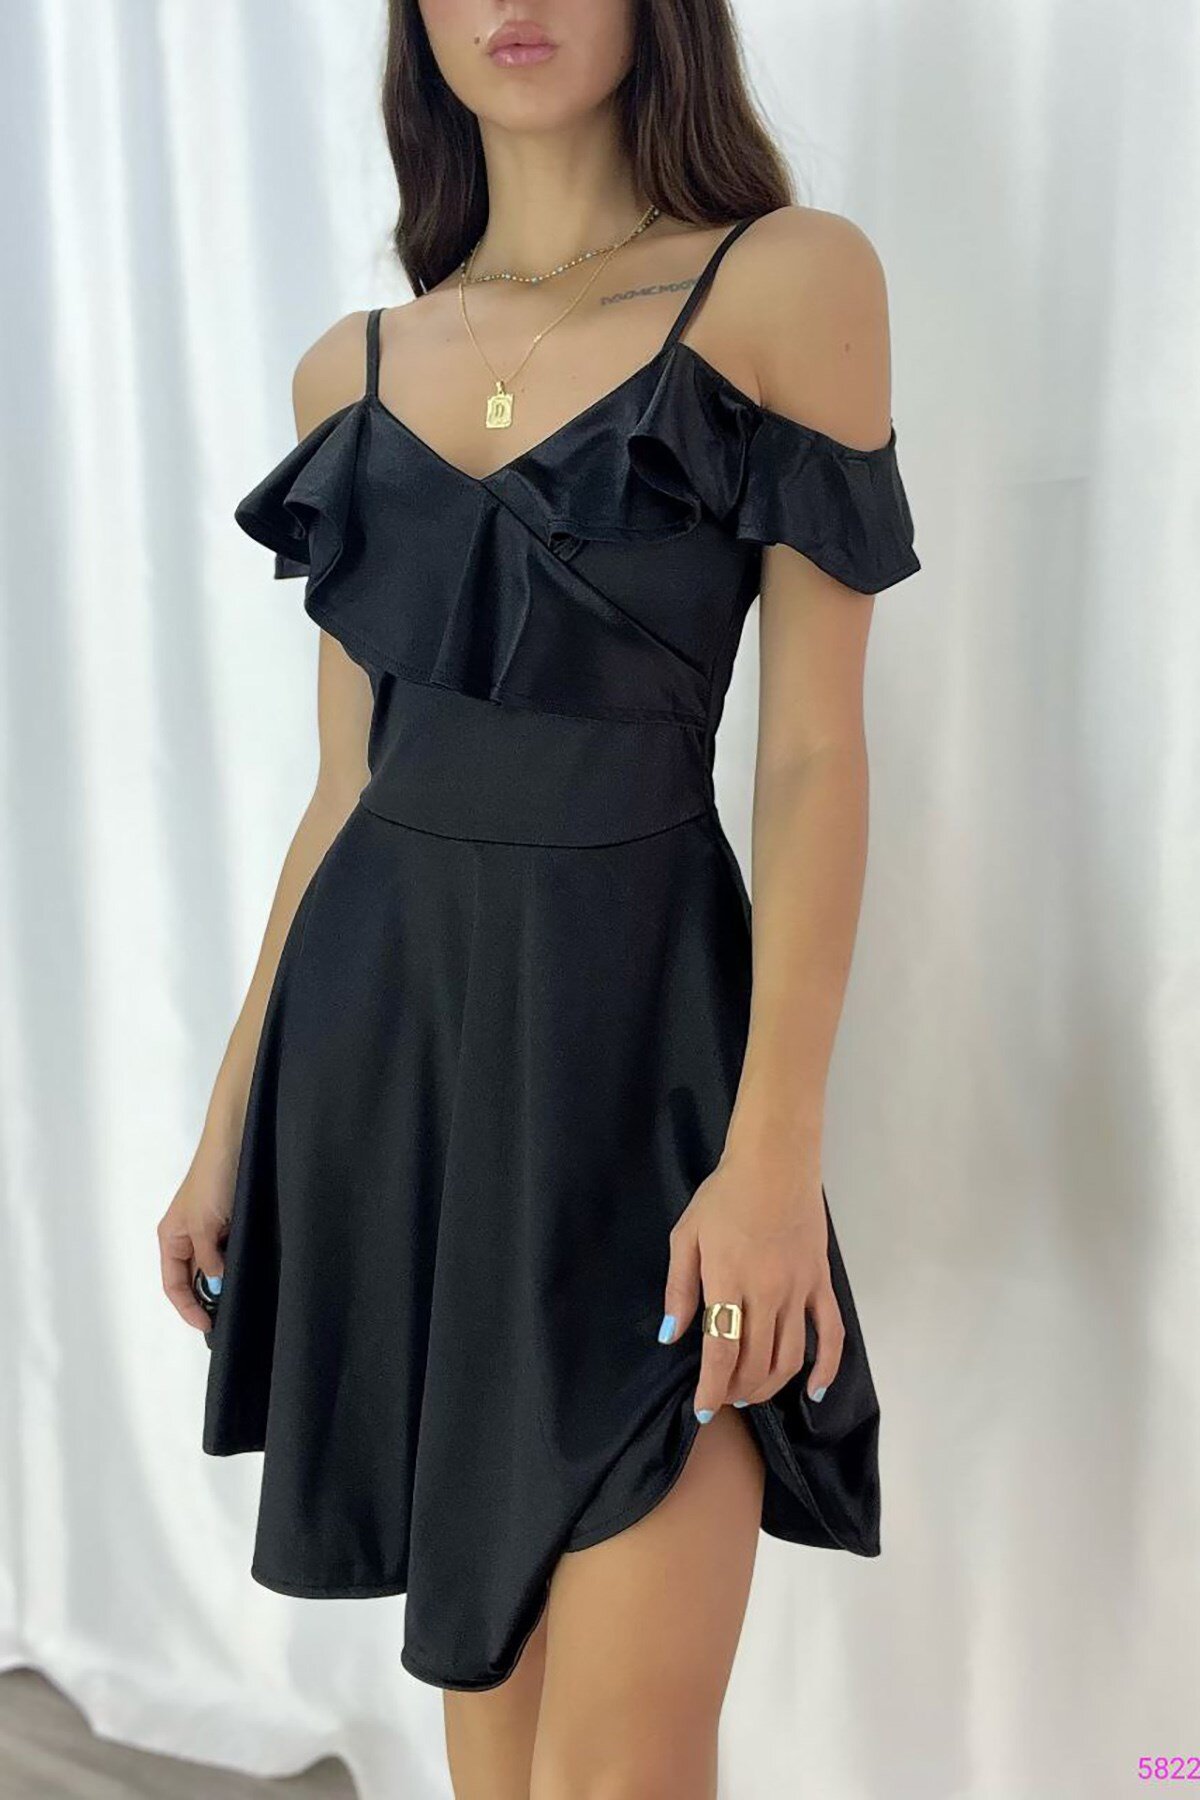 Deafox Siyah Saten Kumaş İnce Askılı Omuz Fırfırlı Mini Abiye Elbise